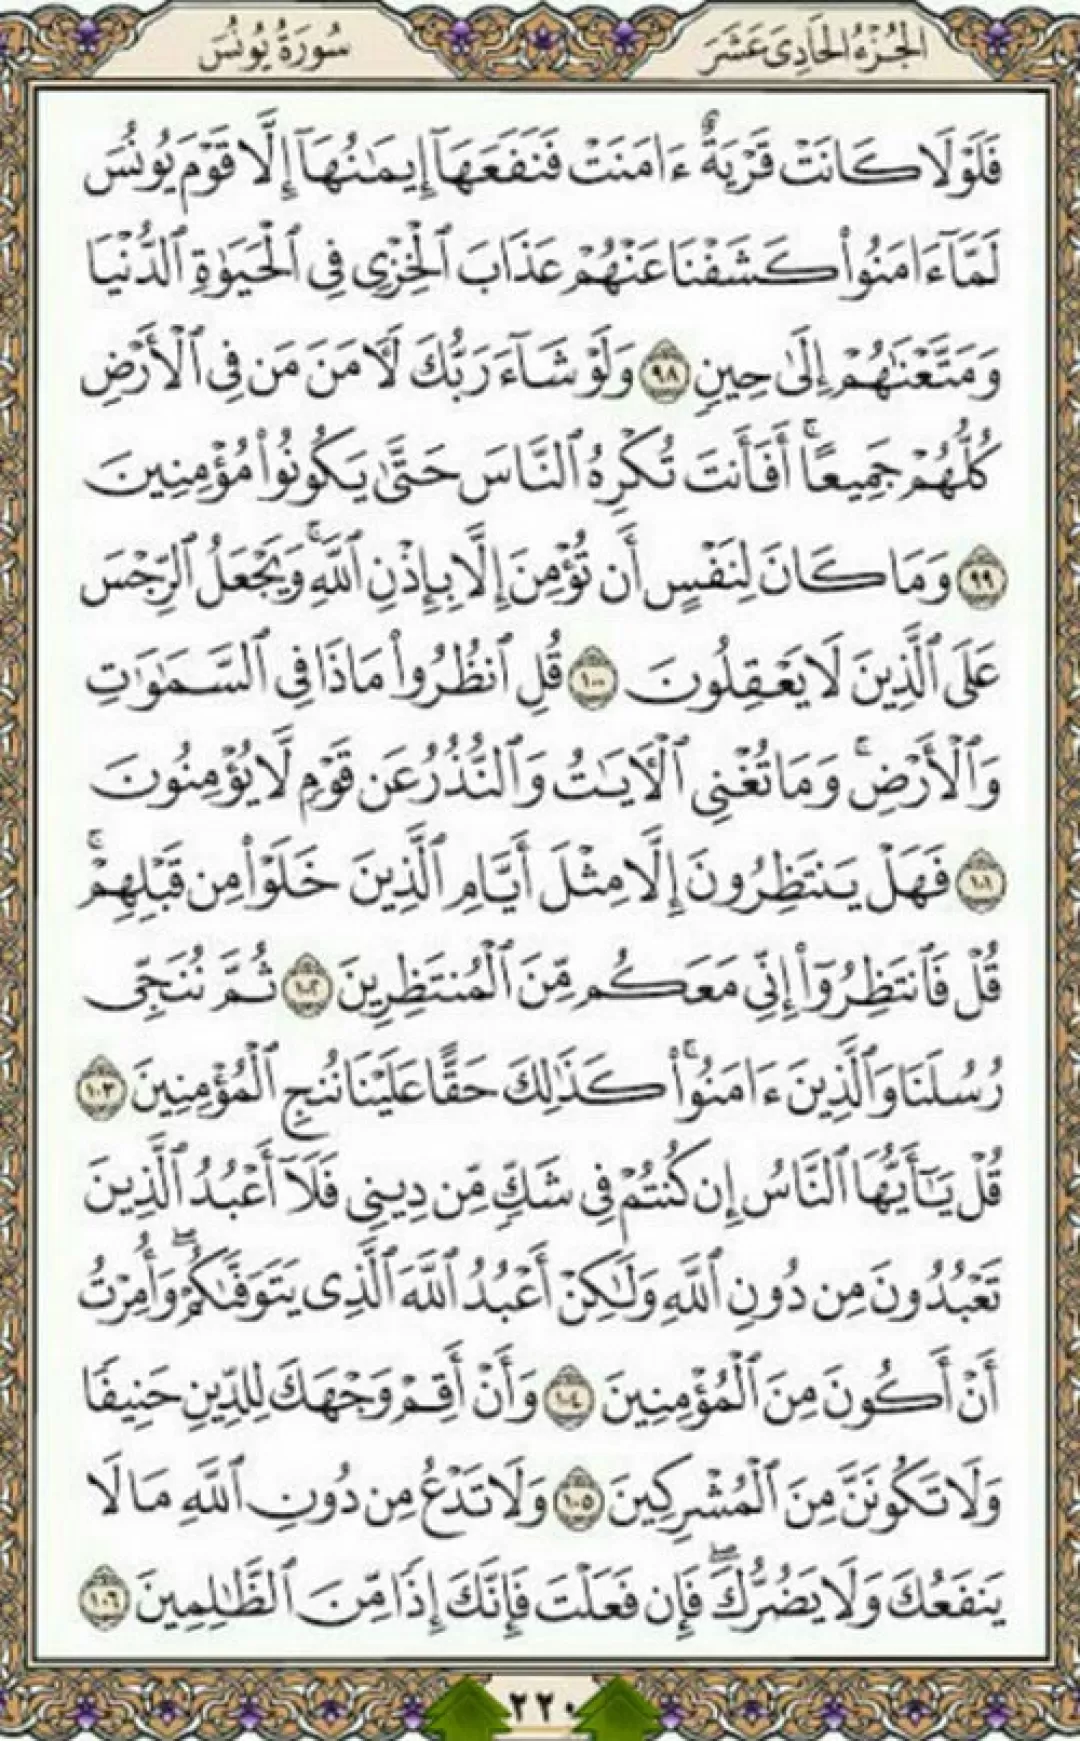 روزانه یک صفحه با آیات الهی قرآن حکیم